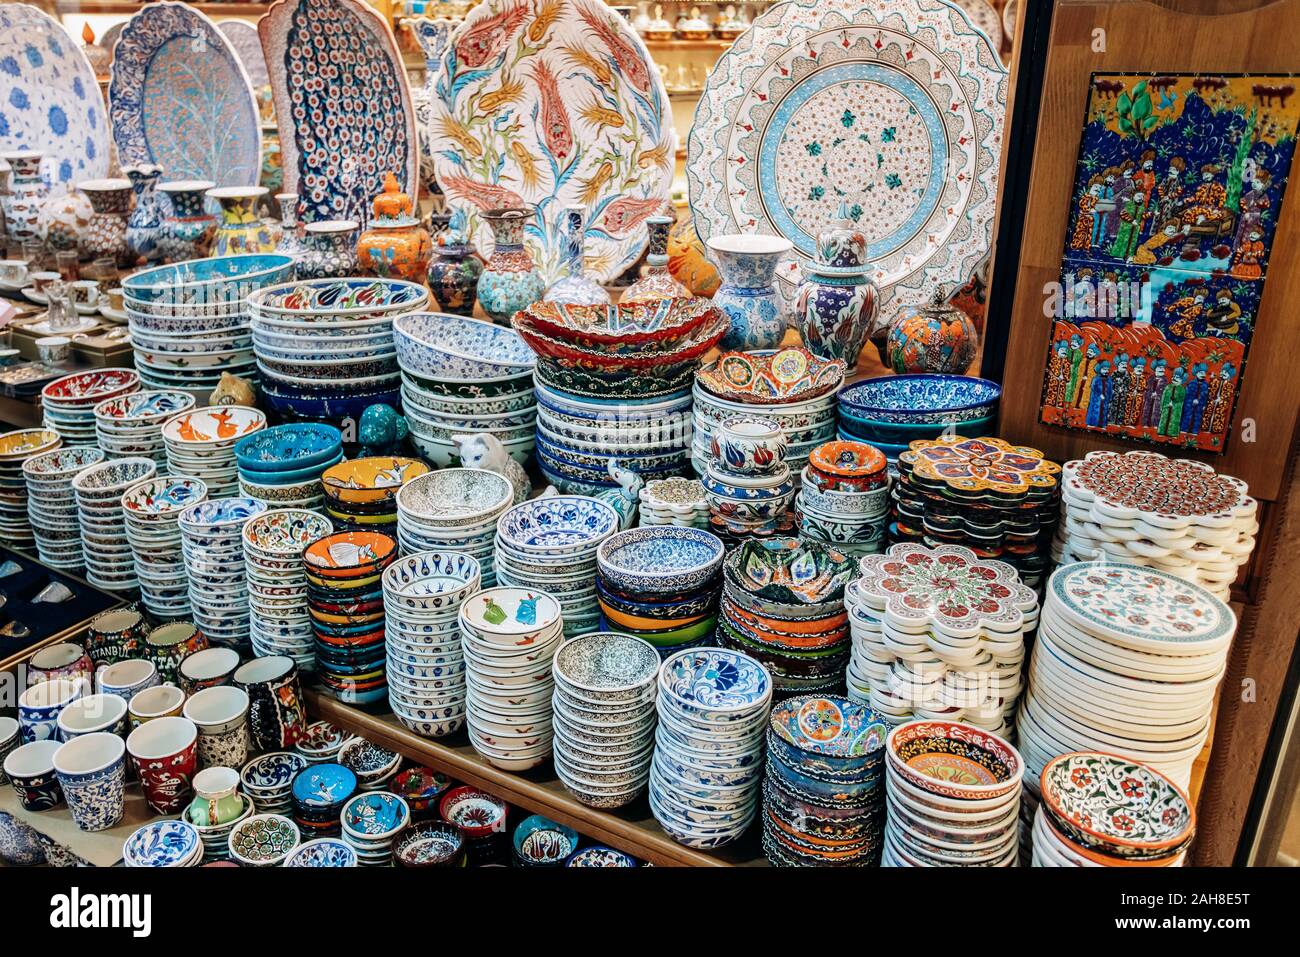 Türkische keramisches Geschirr ist auf dem Markt verkauft Stockfotografie -  Alamy